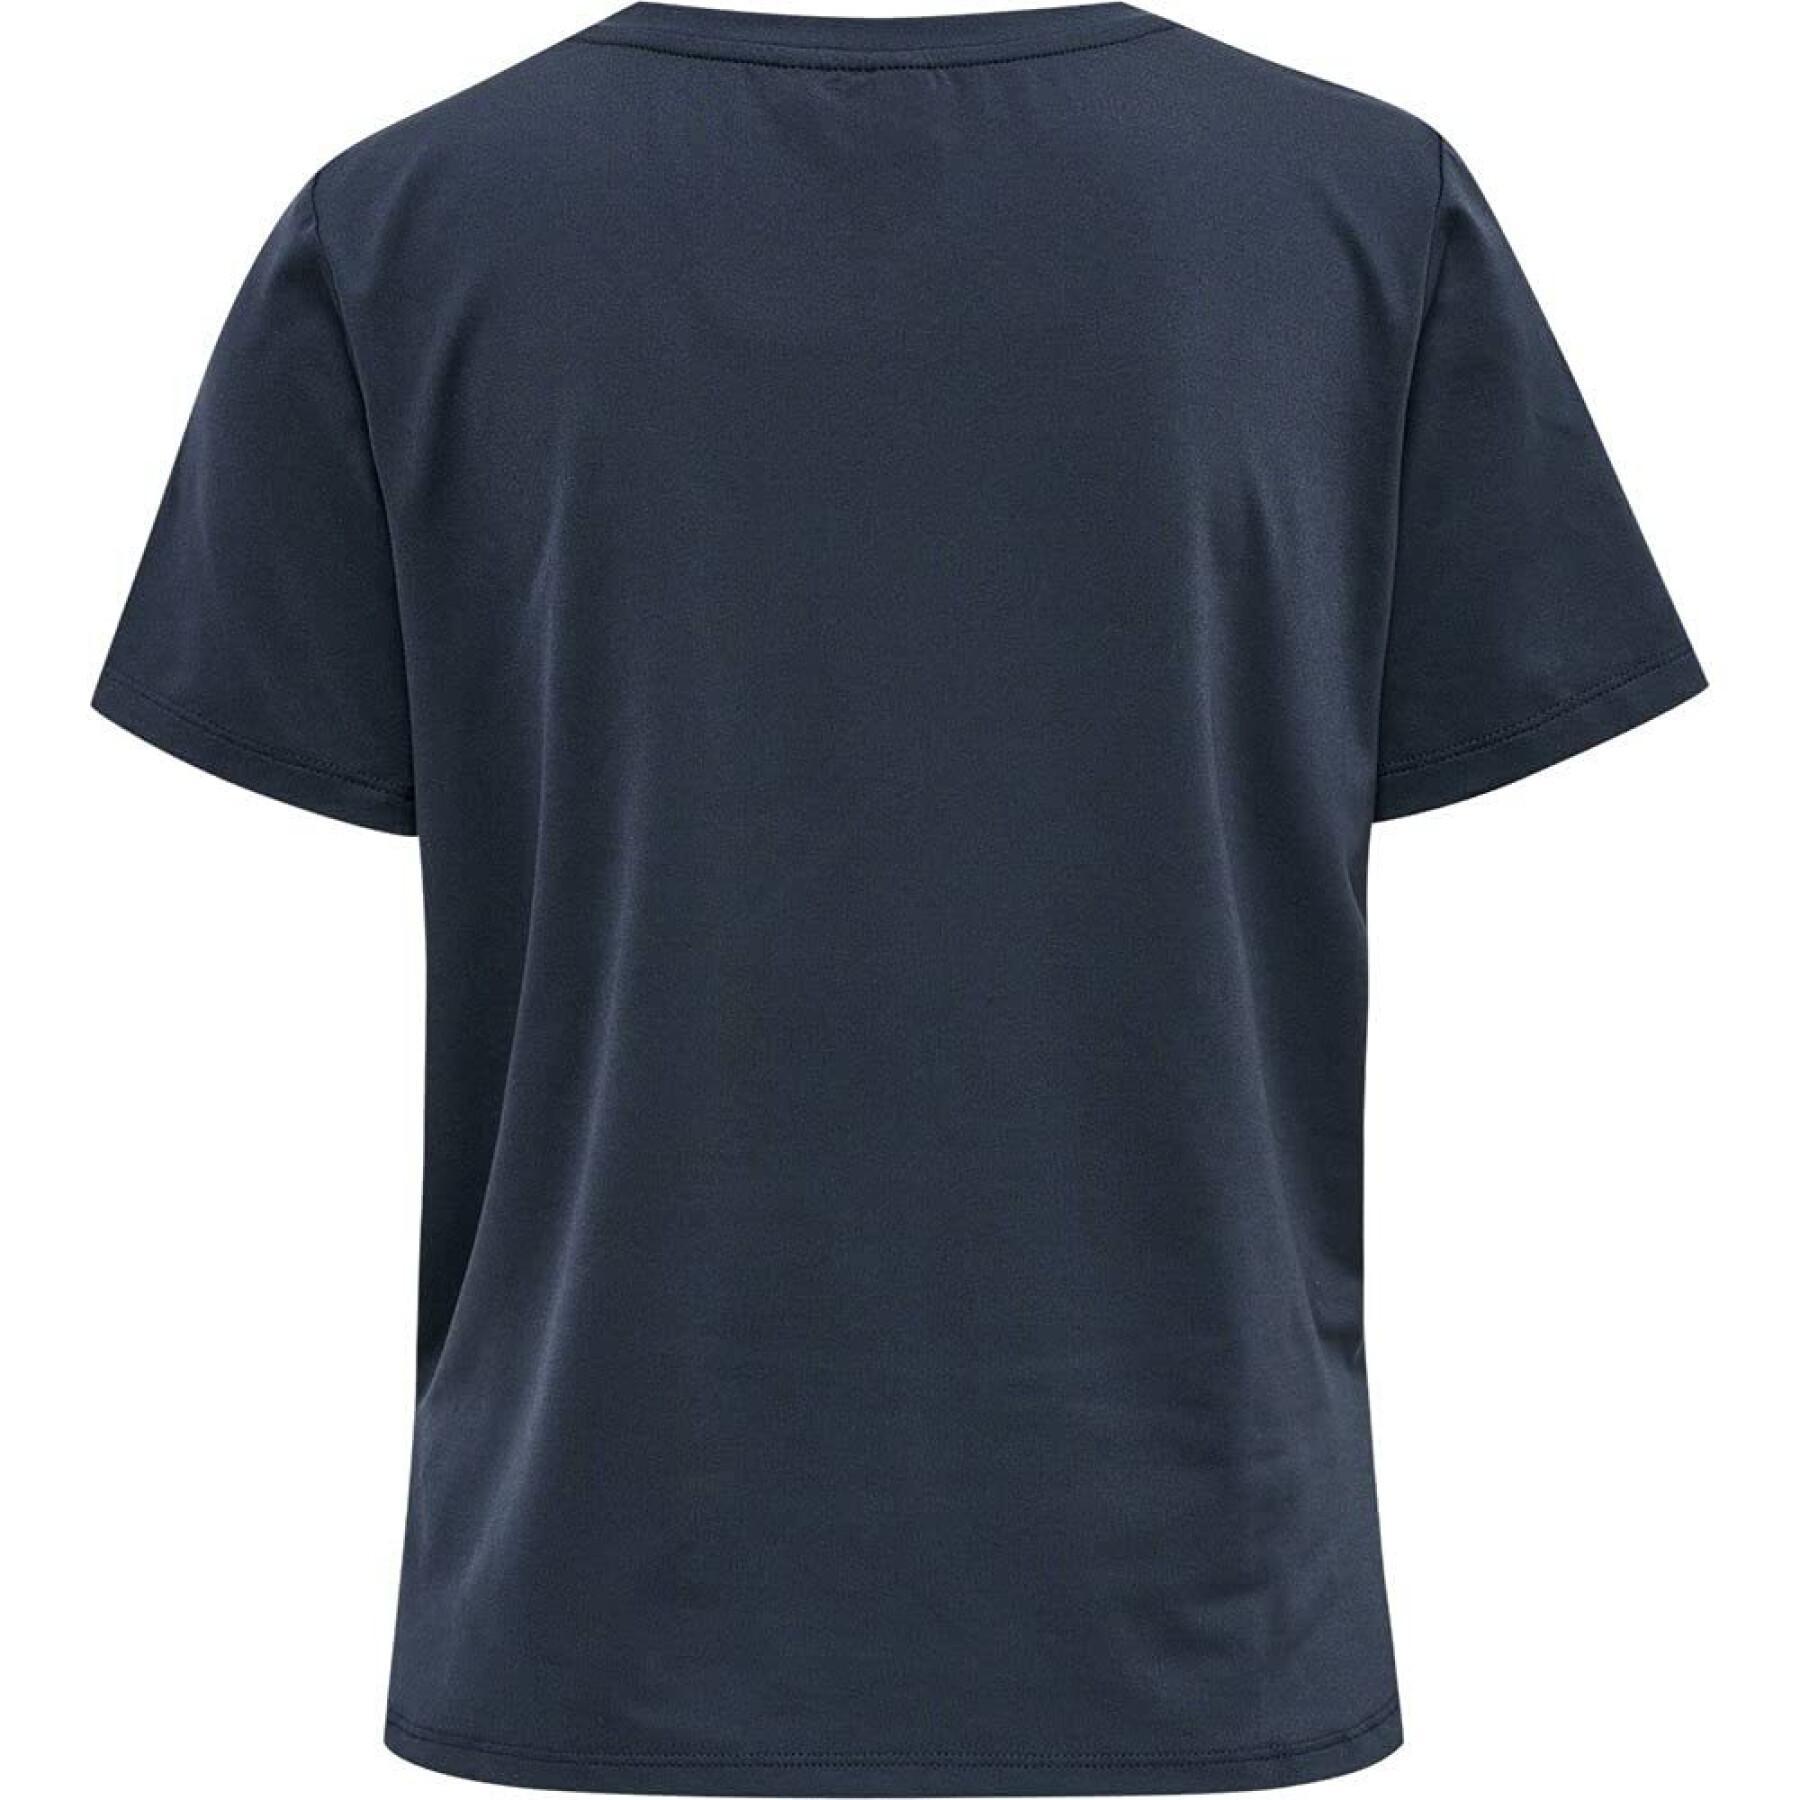 Women's T-shirt Hummel hmlsofia loose short